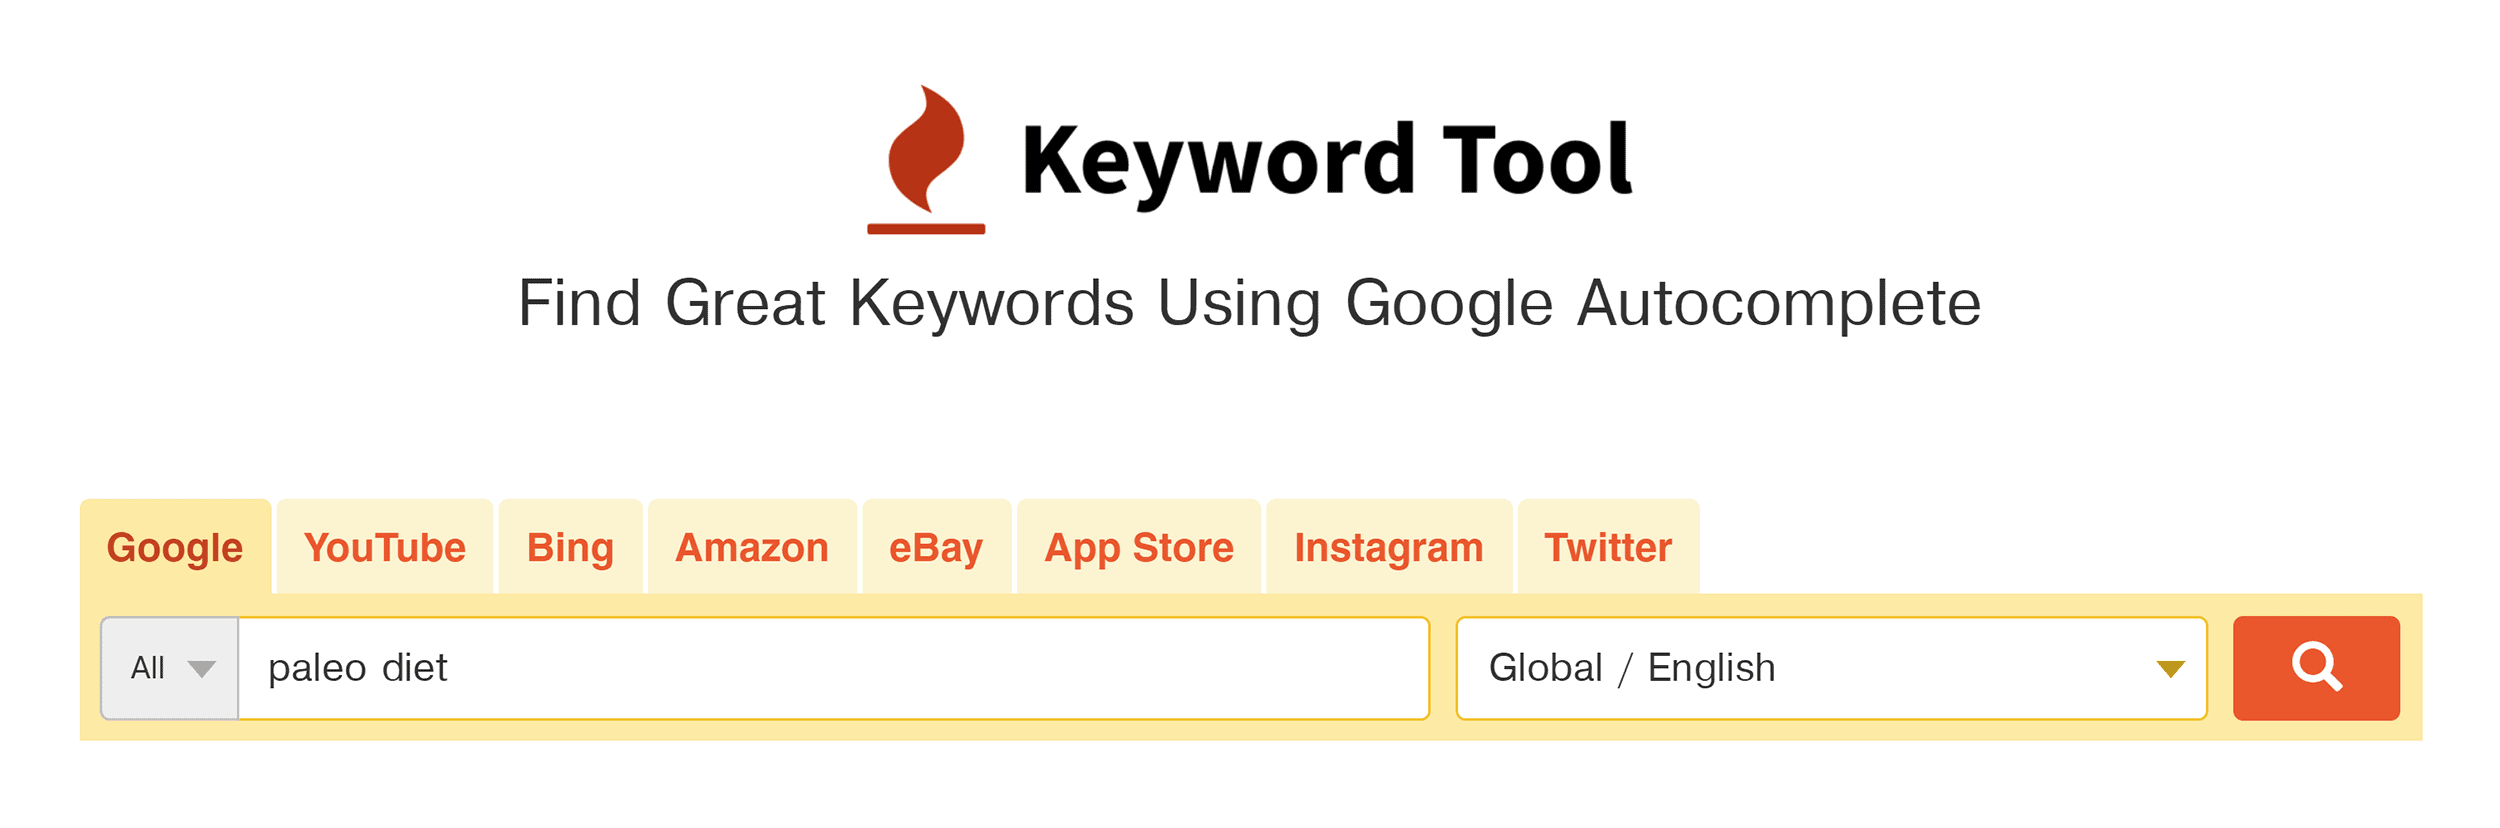 KeywordTool – Search